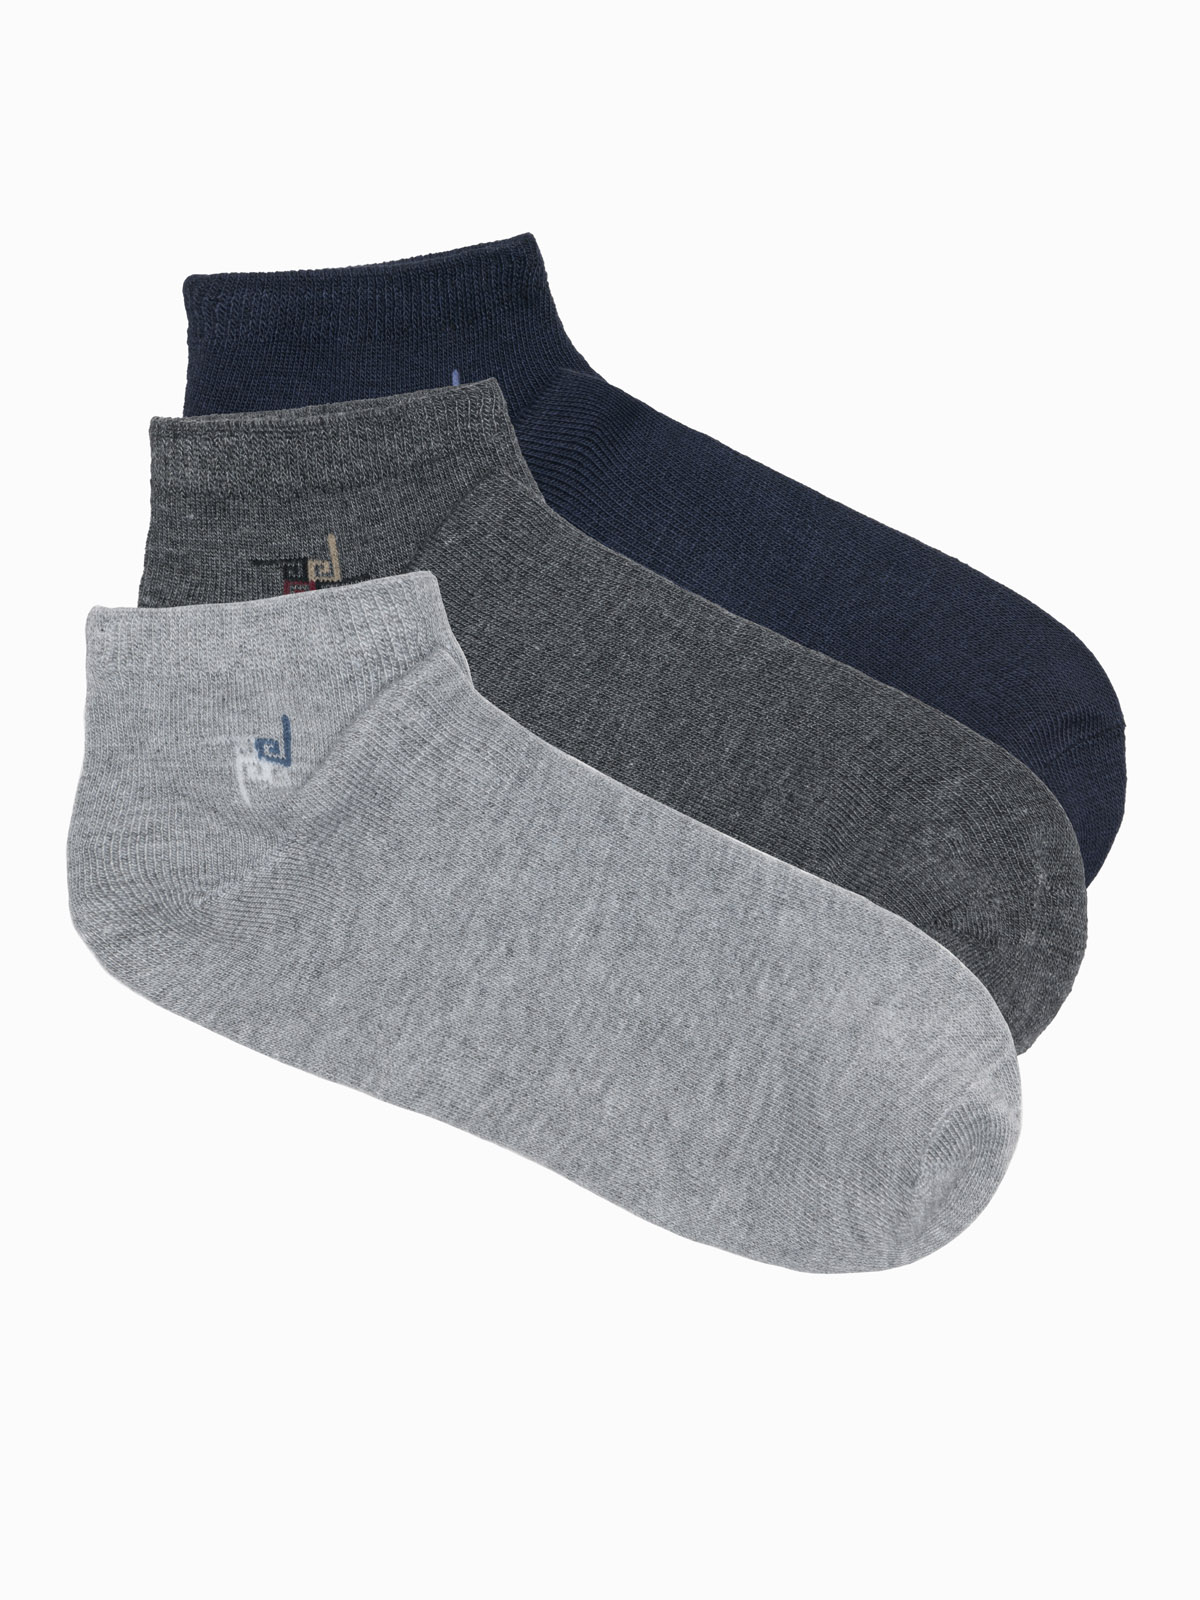 Edoti Men's Socks